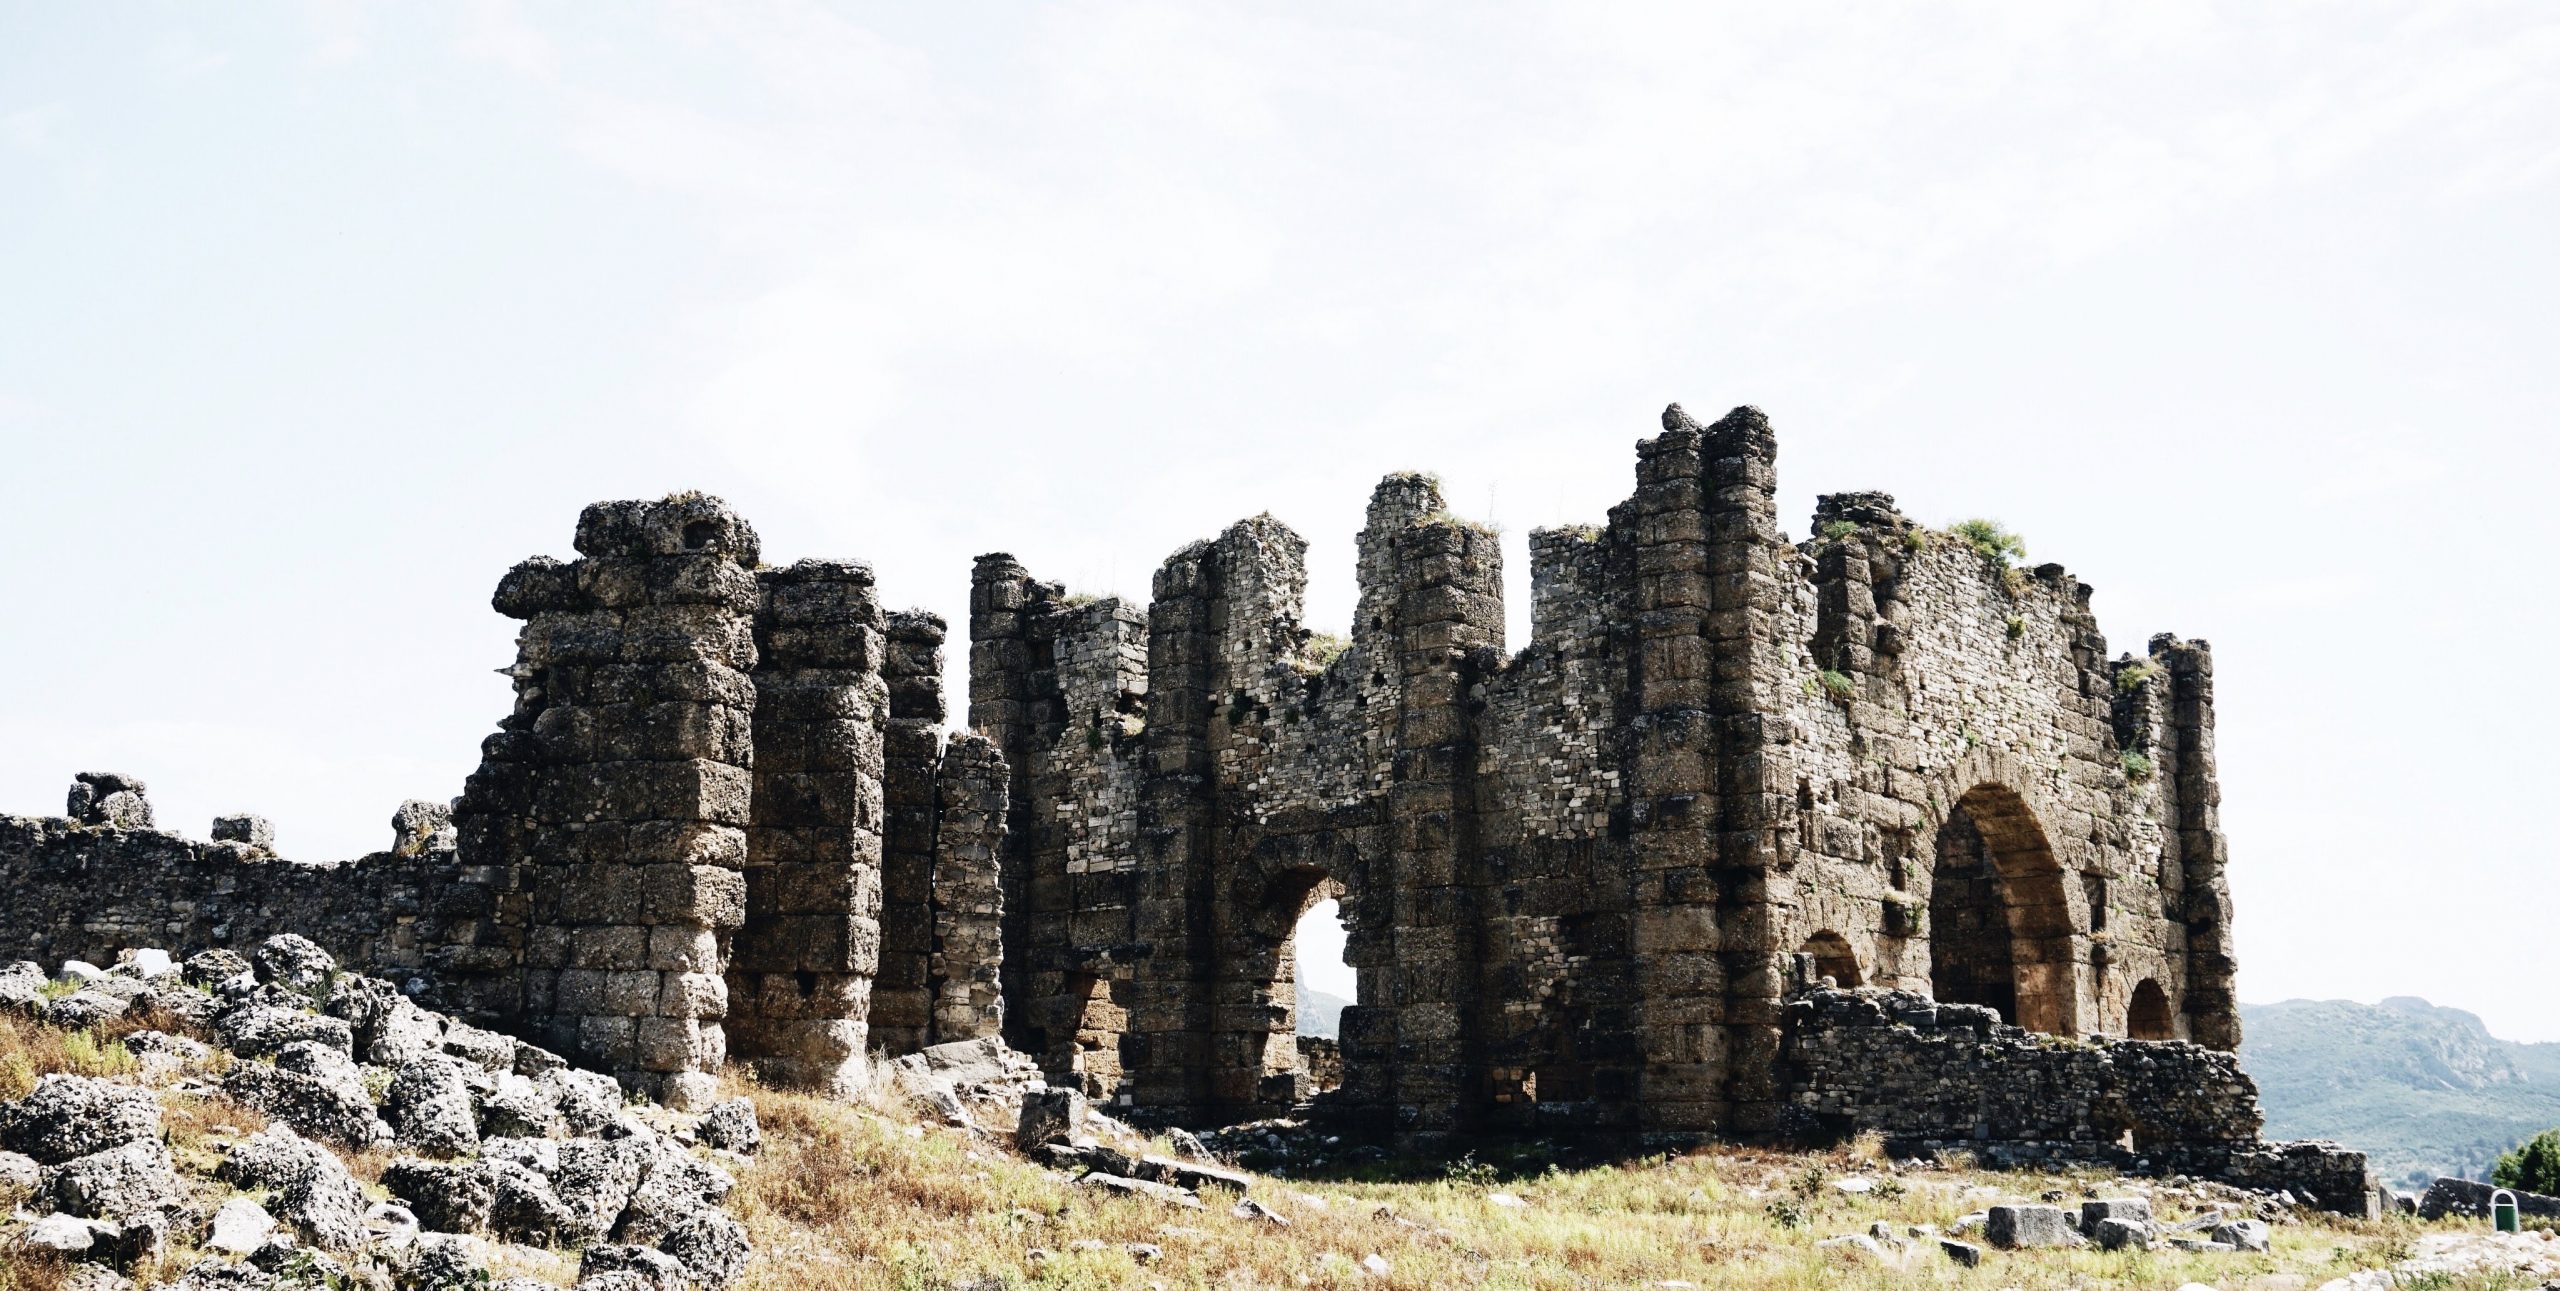 Photographie d'une ruine de château en ruine reposant au sommet d'une colline verte et herbeuse. Les restes de quatre murs en pierre, ainsi que deux portes rondes sont visibles sur le côté droit et à l'arrière de la ruine. Autour de la ruine se trouvent des amas de pierres et de rochers gris. Le ciel calme est d'un bleu pâle.